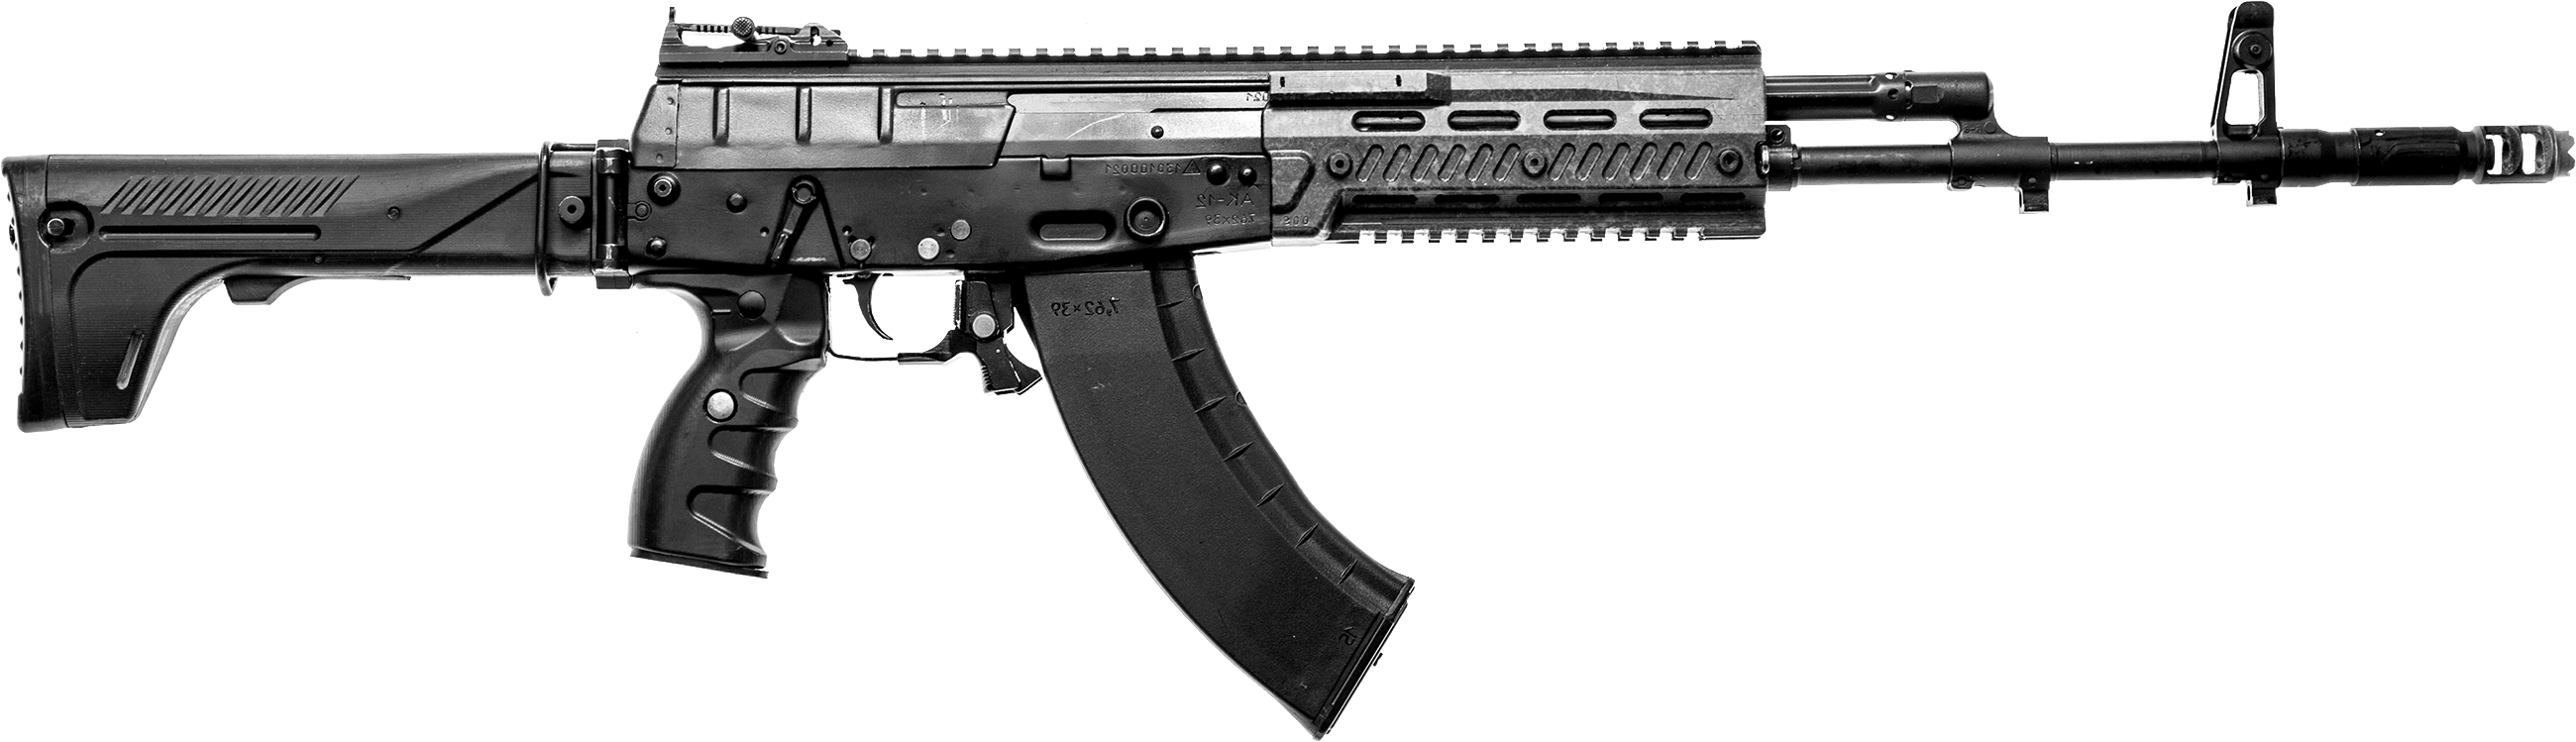 AK - 12